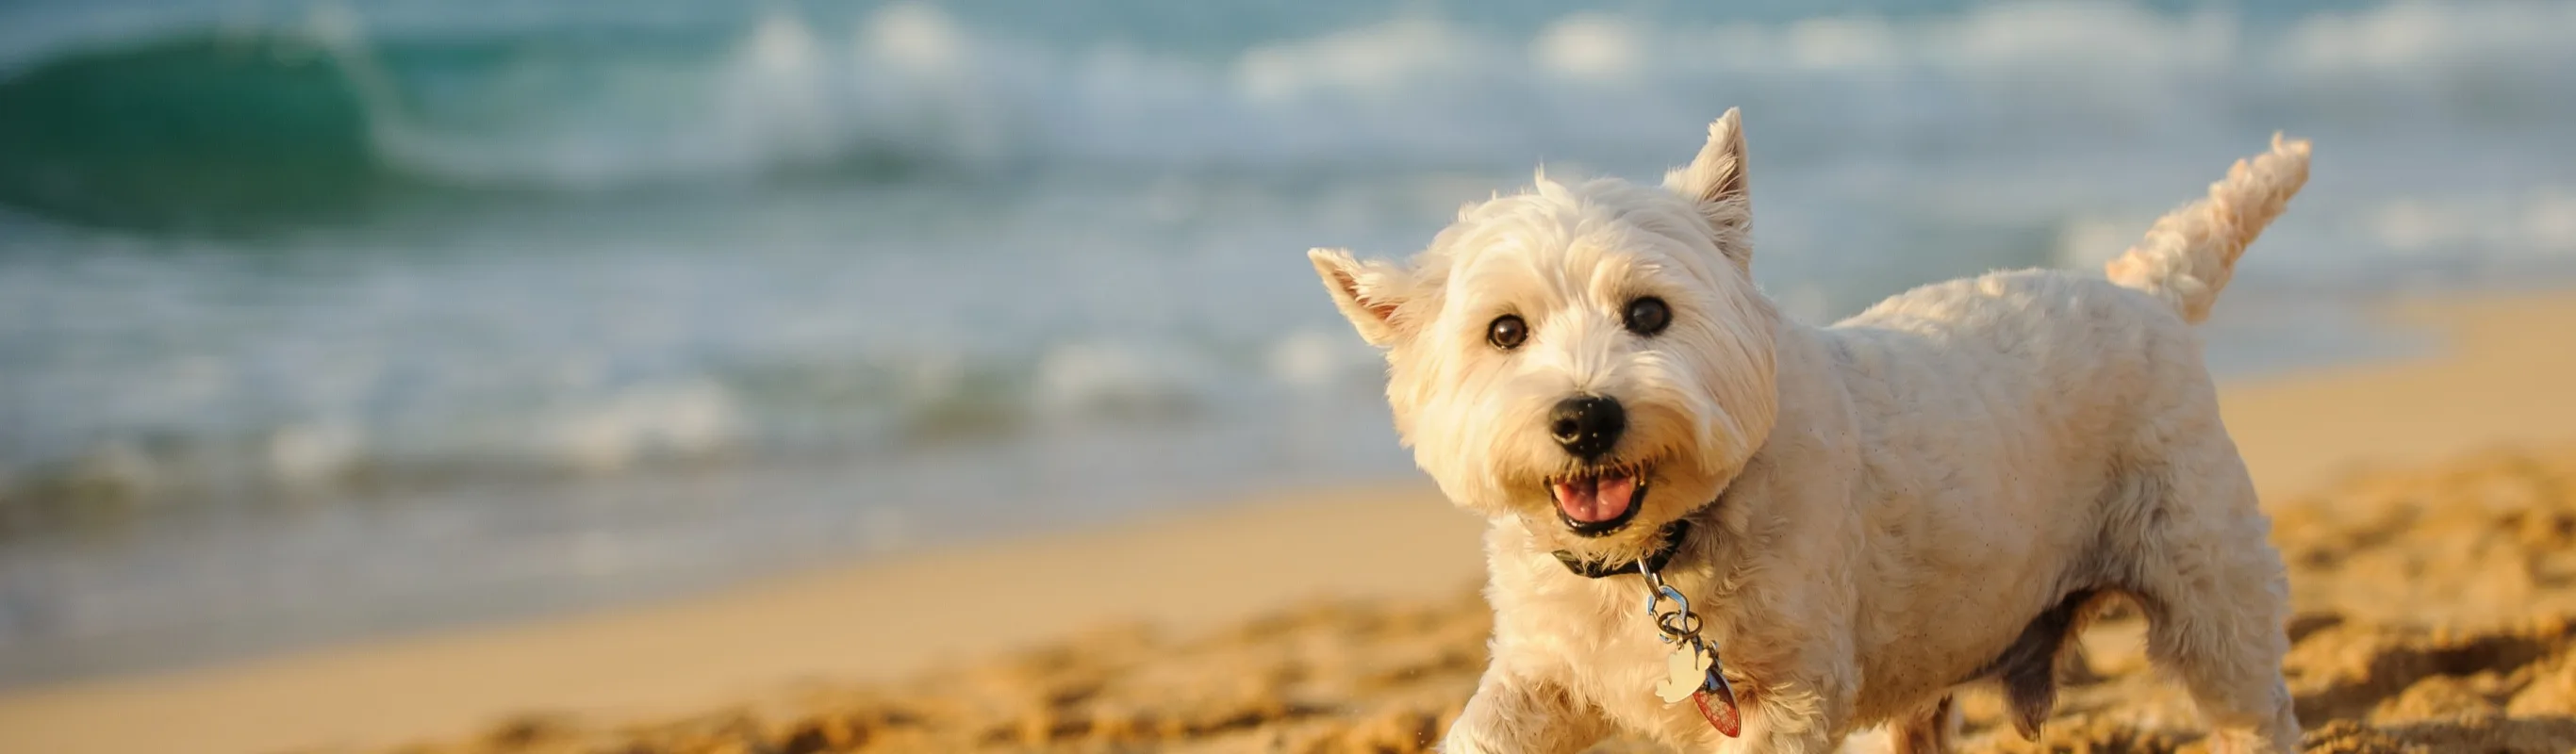 Terrier on beach